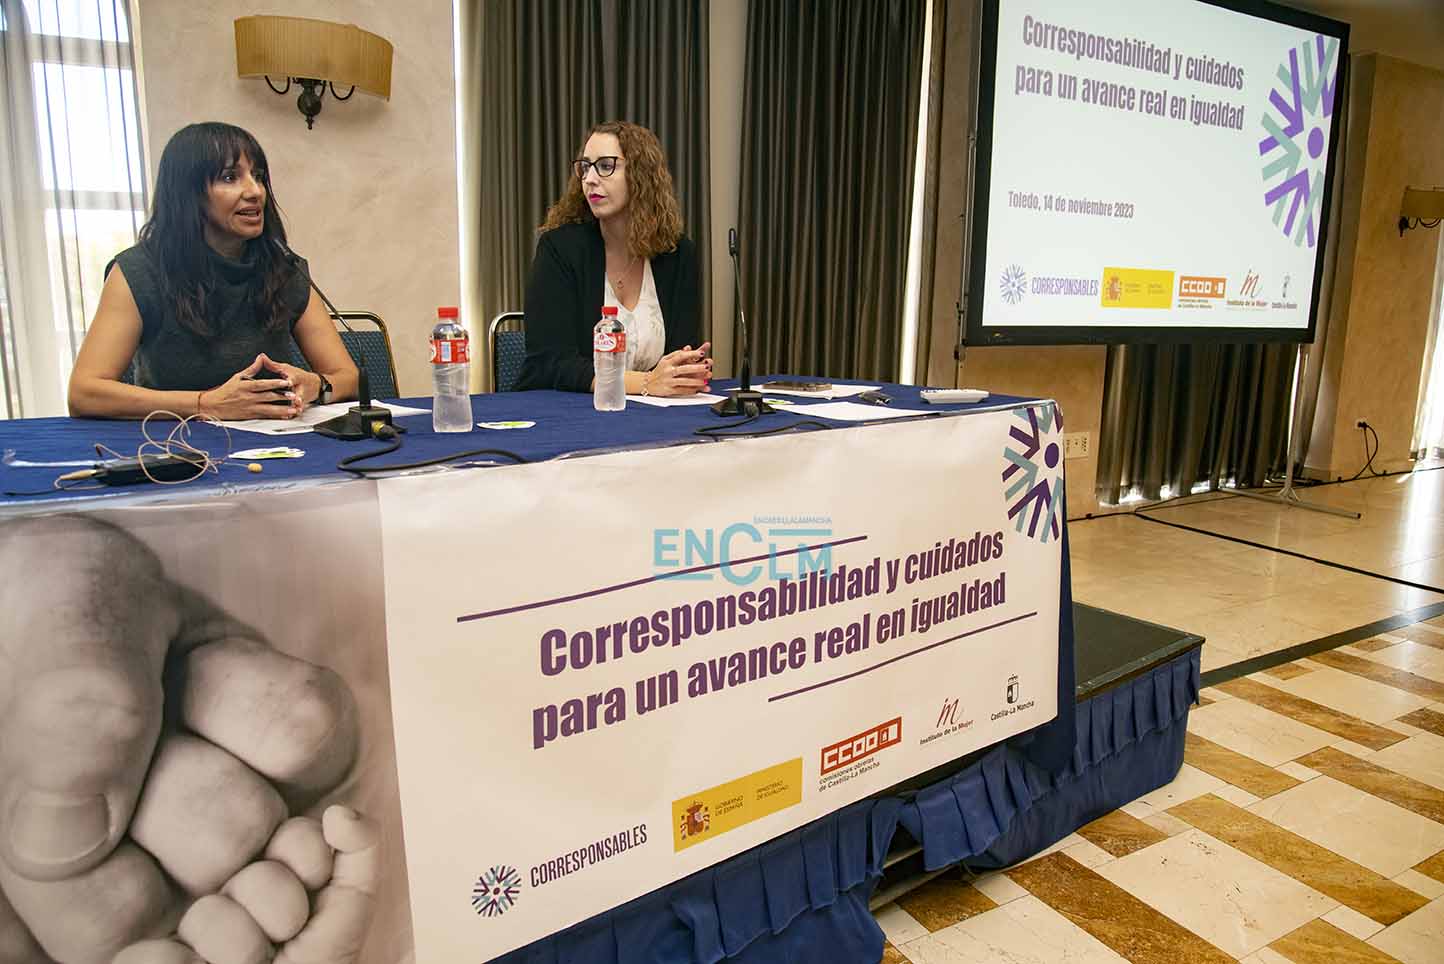 Jornada "Corresponsabilidad y cuidados para un avance real en igualdad", de CCOO CLM. Foto: Rebeca Arango.